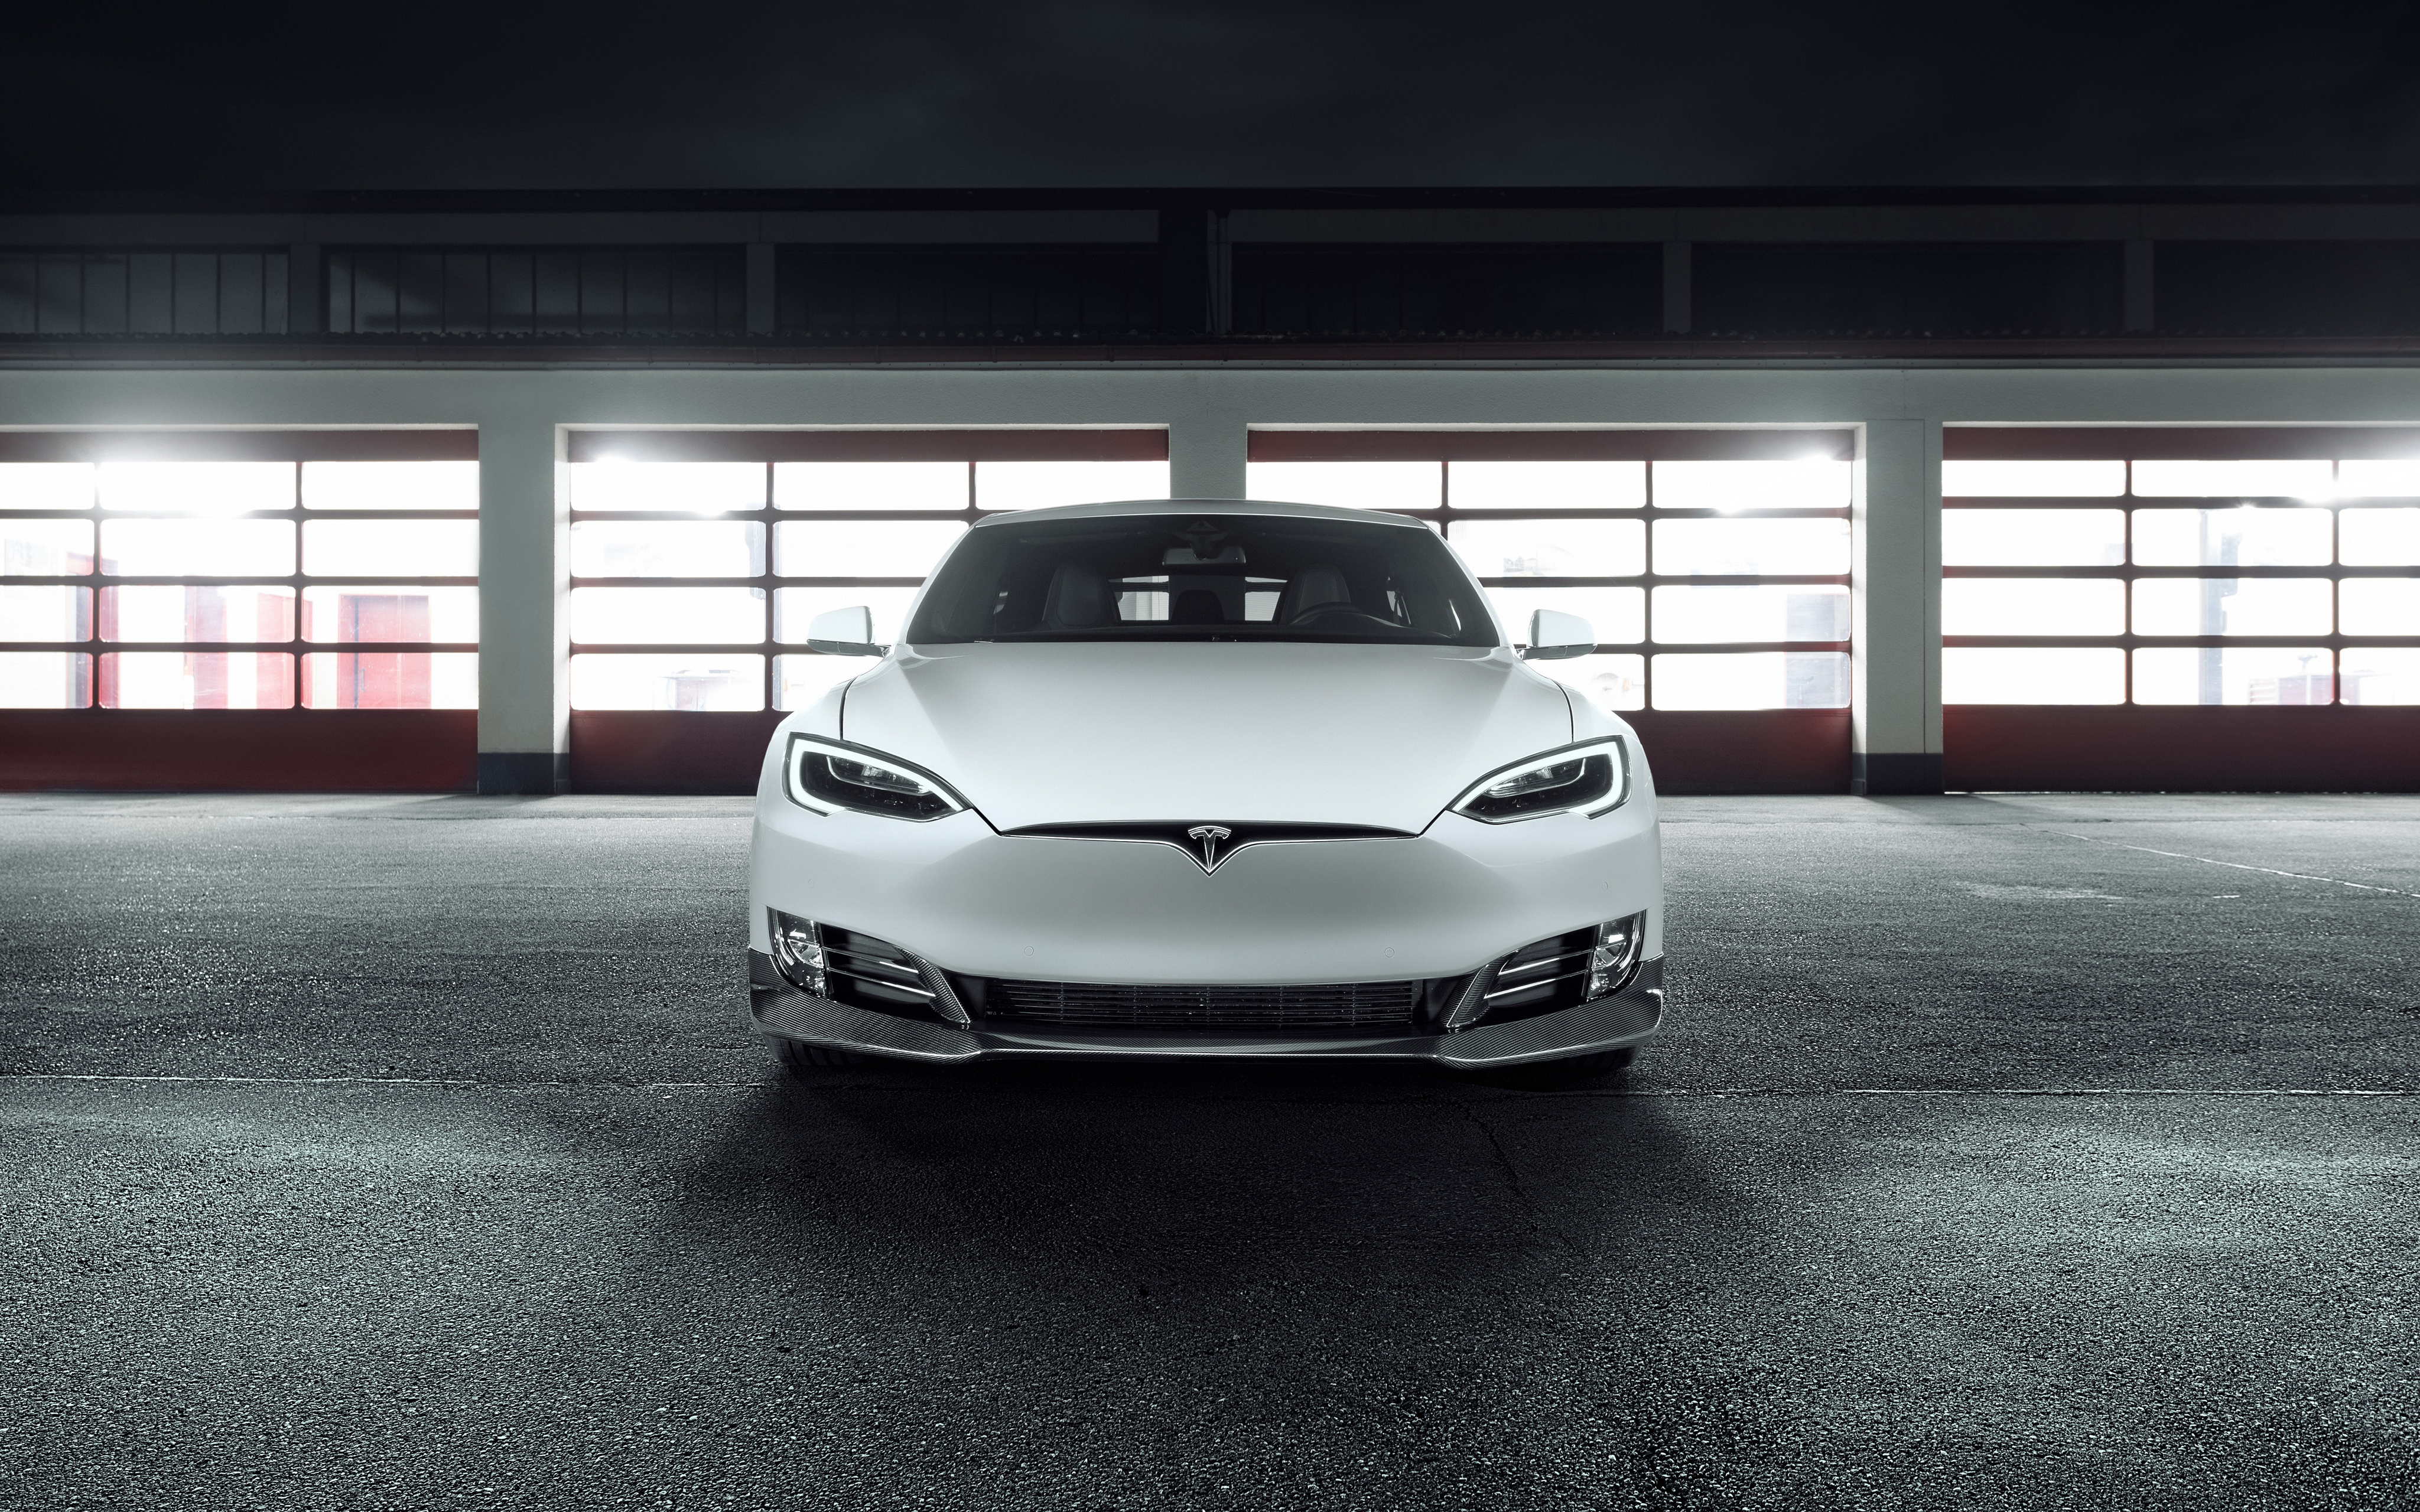 Novitec Tesla Model S 2018 4K534634411 - Novitec Tesla Model S 2018 4K - Tesla, Symbioz, Novitec, Model, 2018